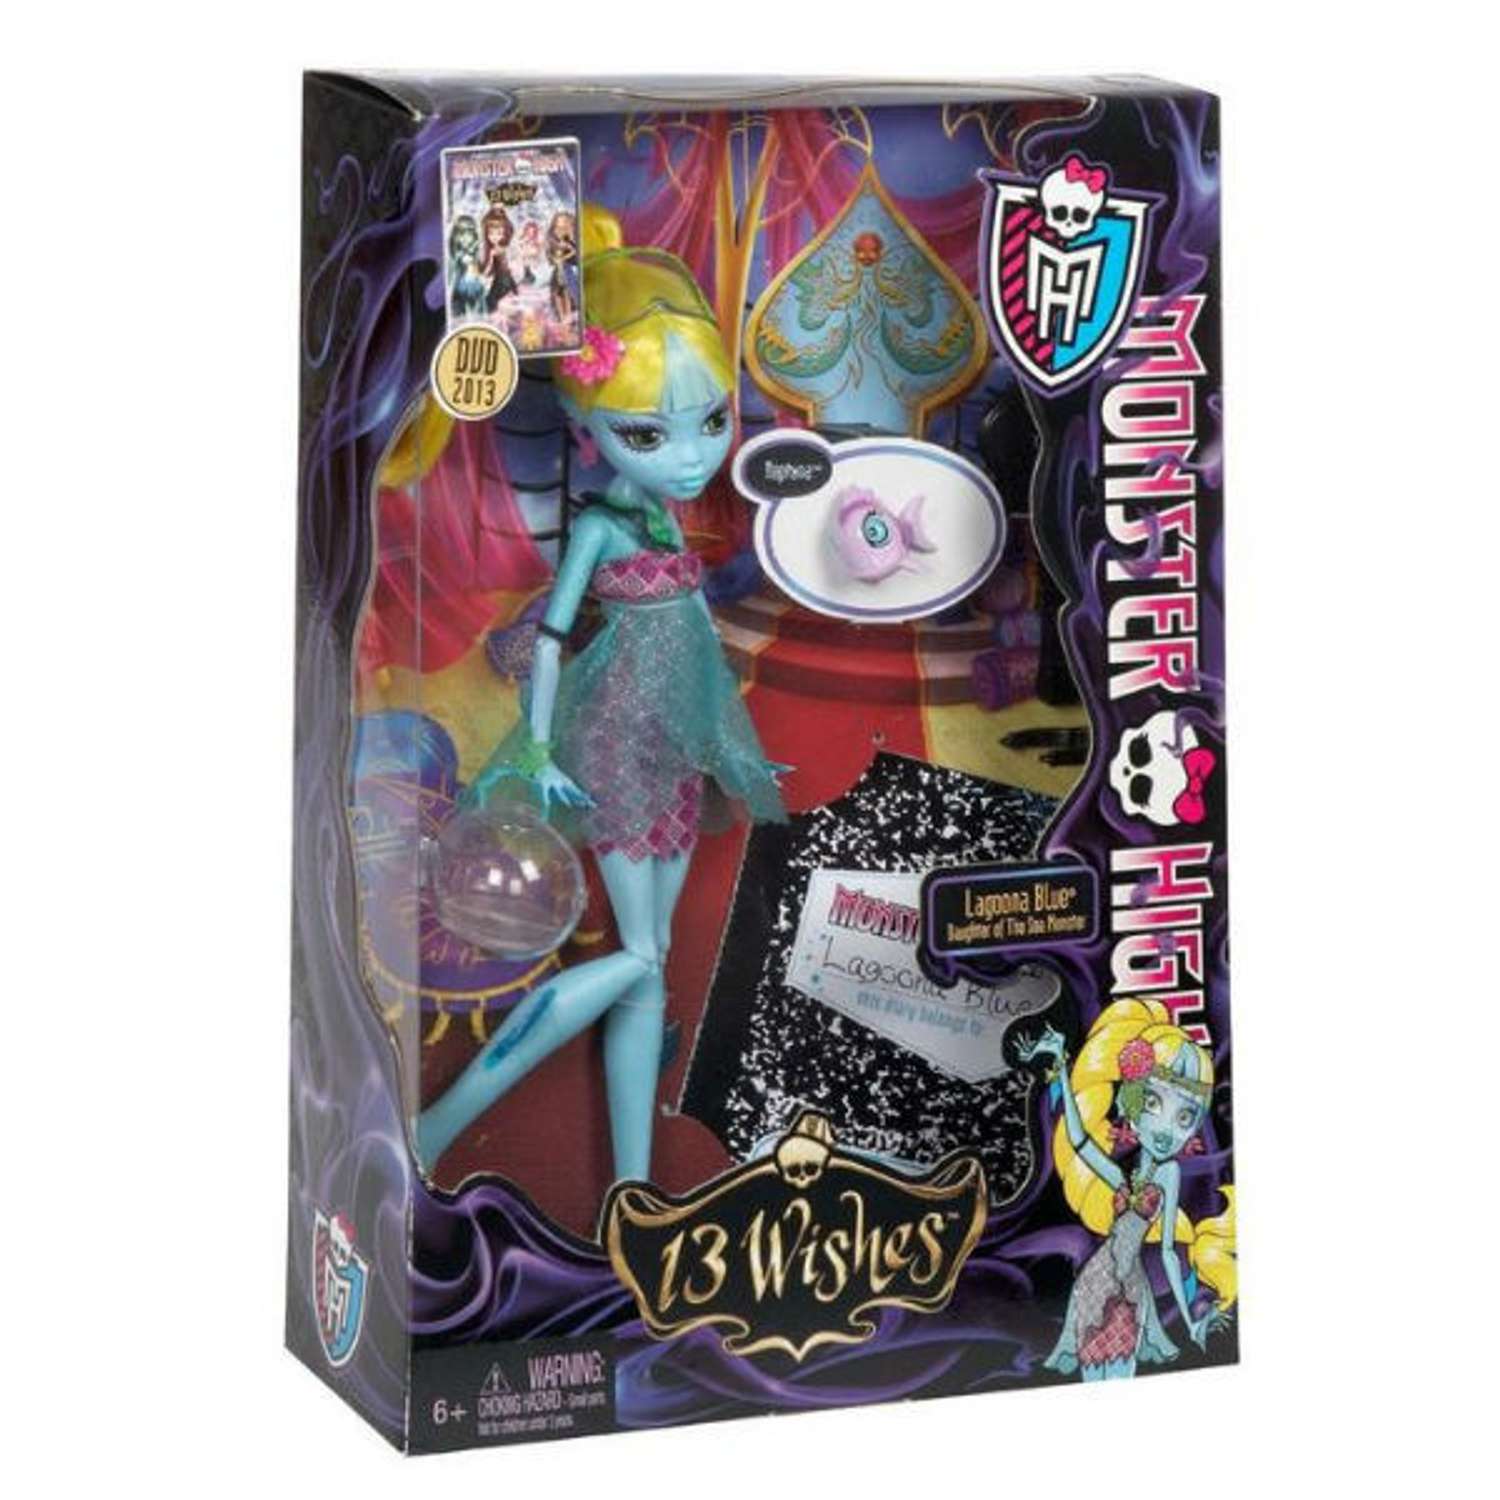 Куклы Monster High Серия 13 желаний в ассортименте BBK02 - фото 5